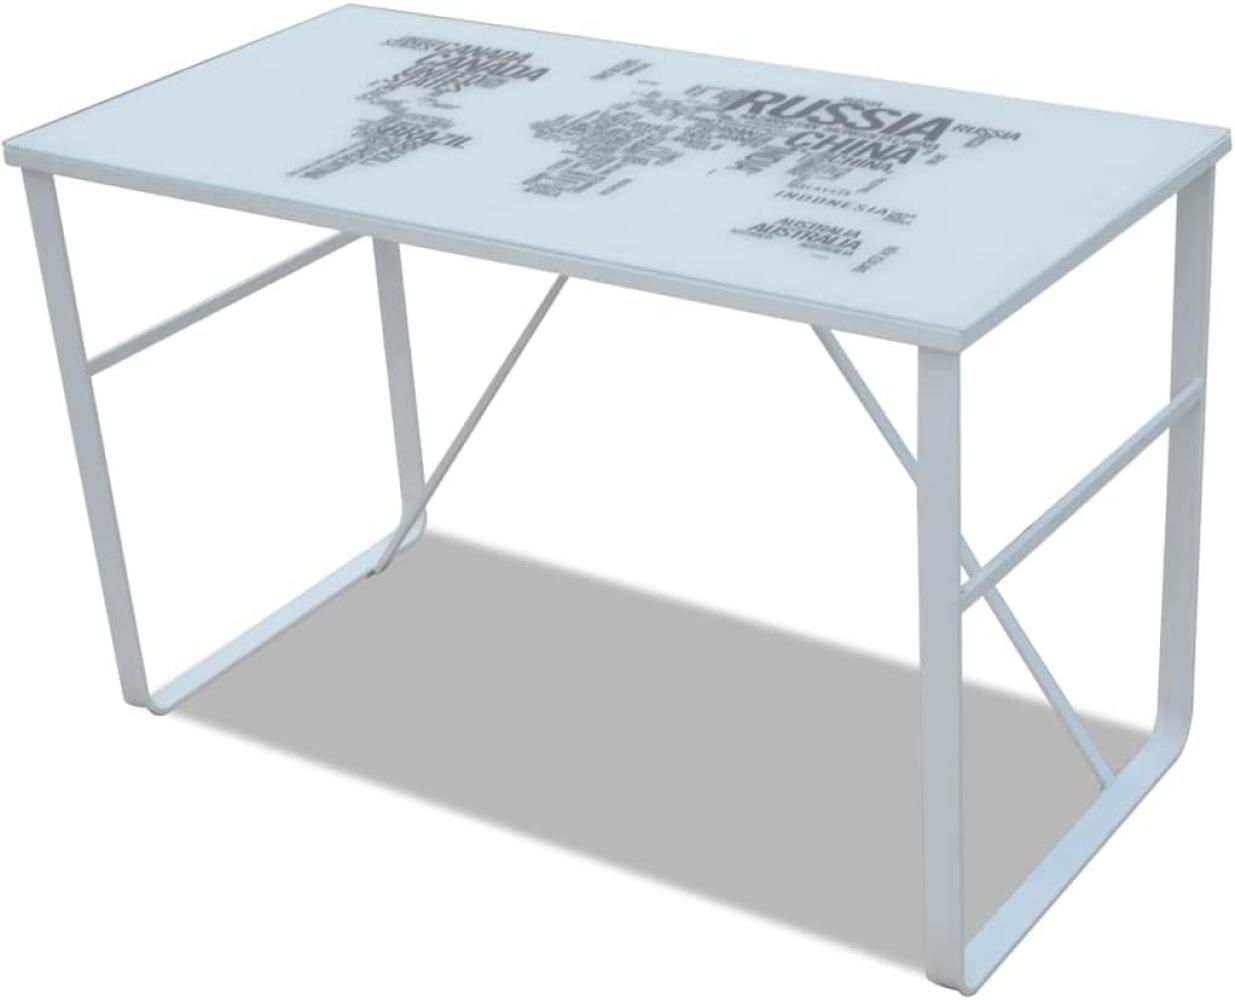 Schreibtisch mit Weltkarte, schwarz/ weiß, 120 x 60 x 75 cm Bild 1